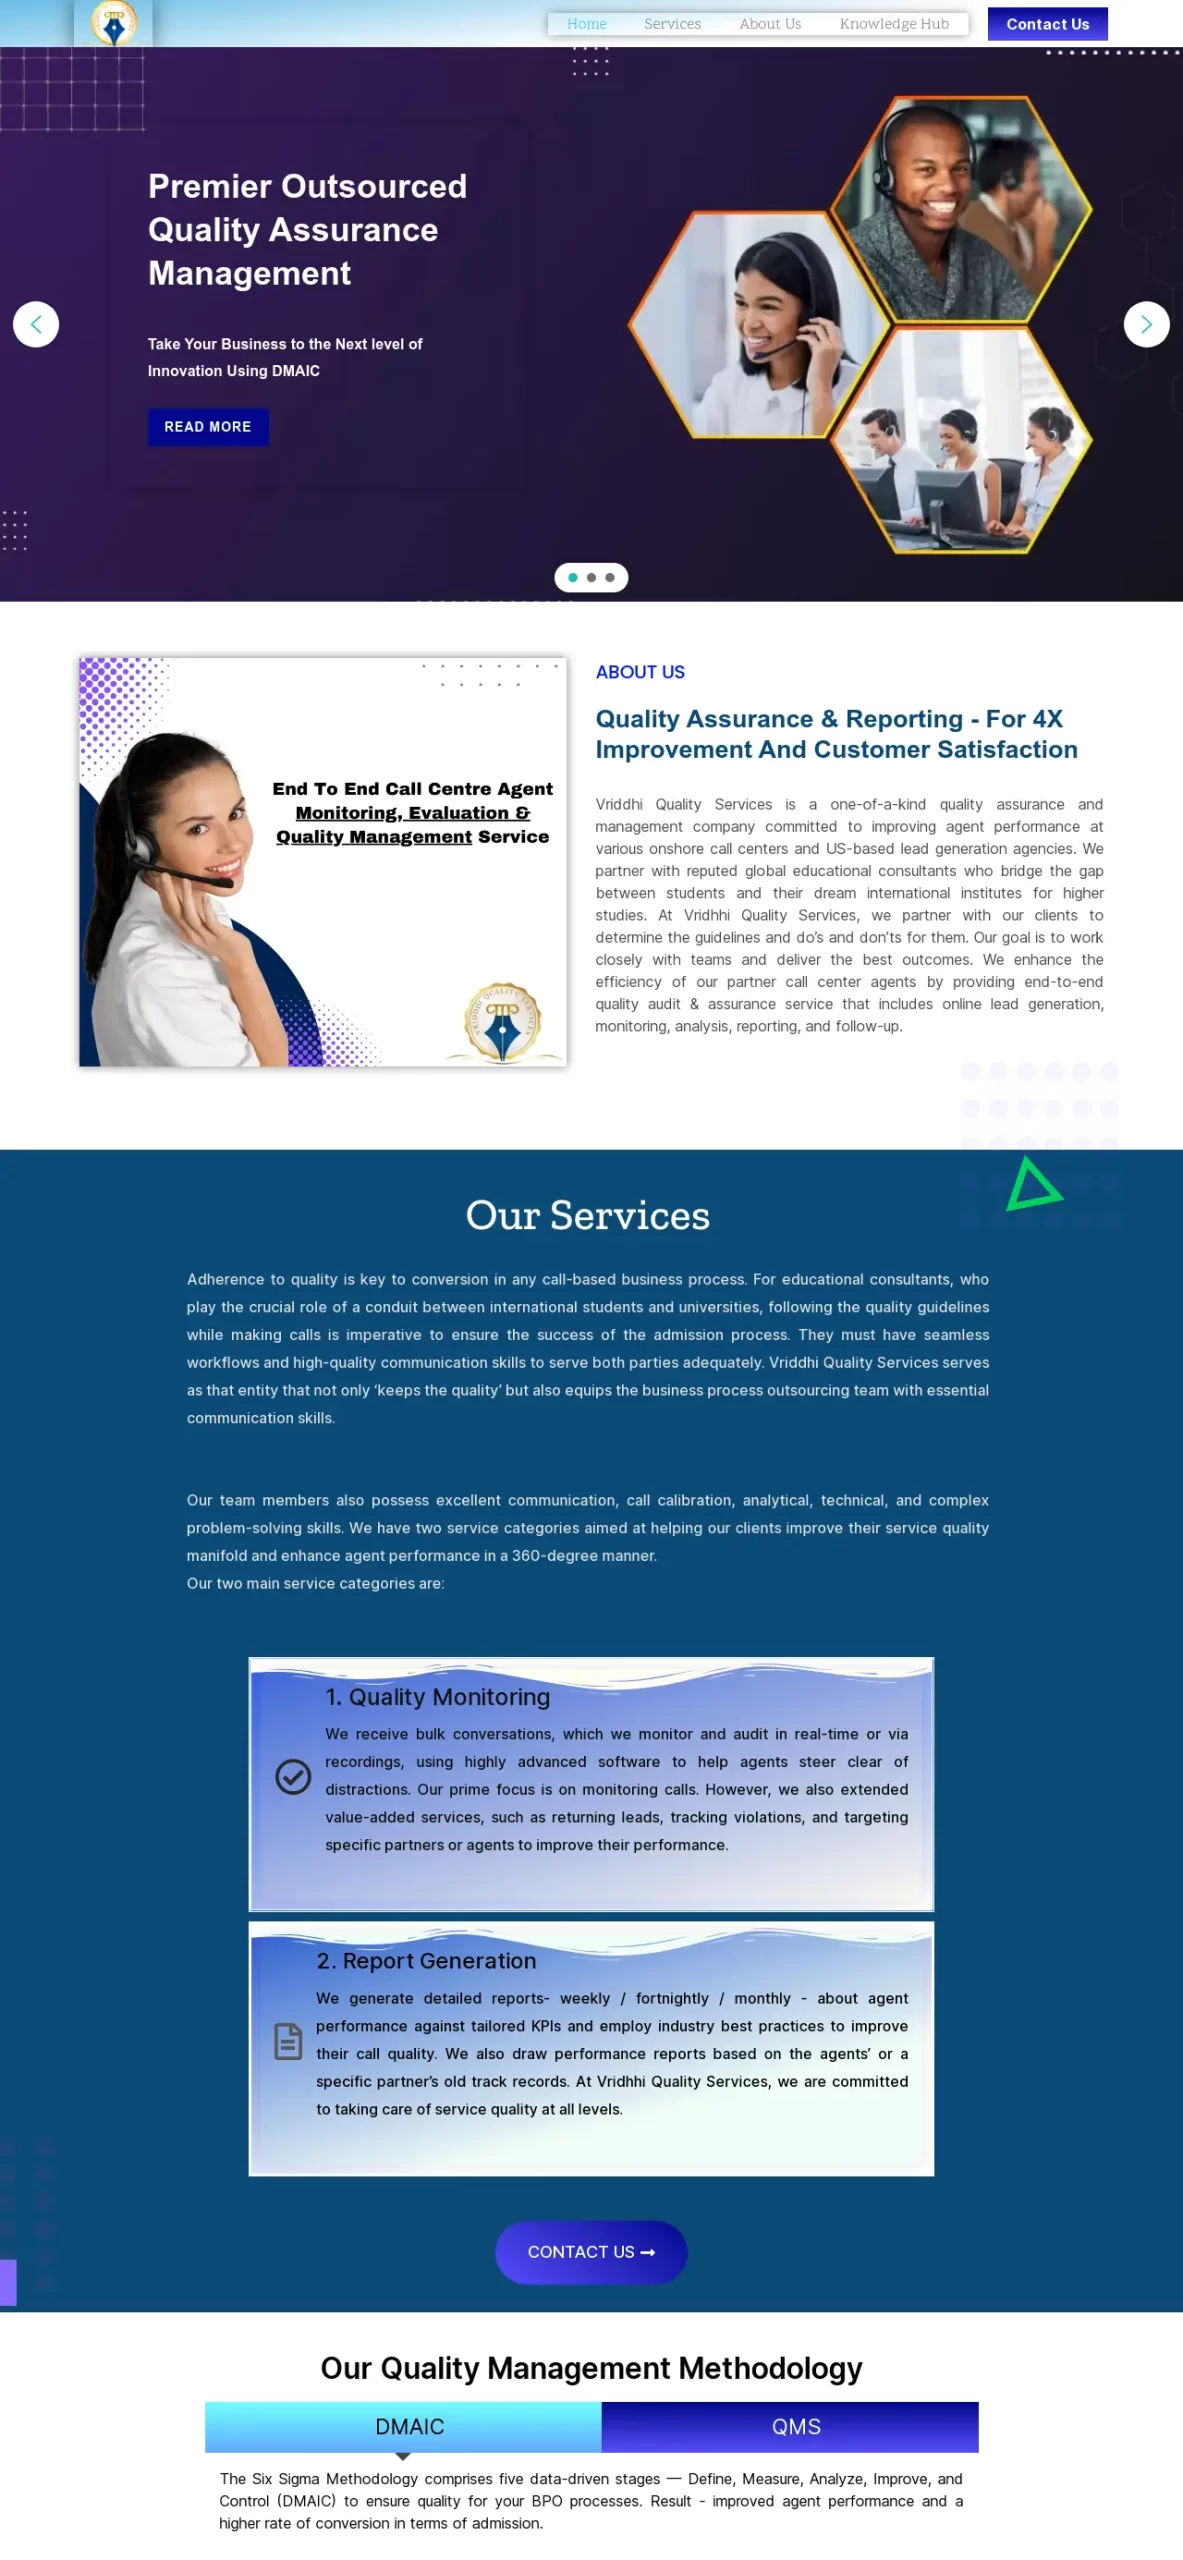 Vriddhi Quality Services - Vriddhi Quality Services